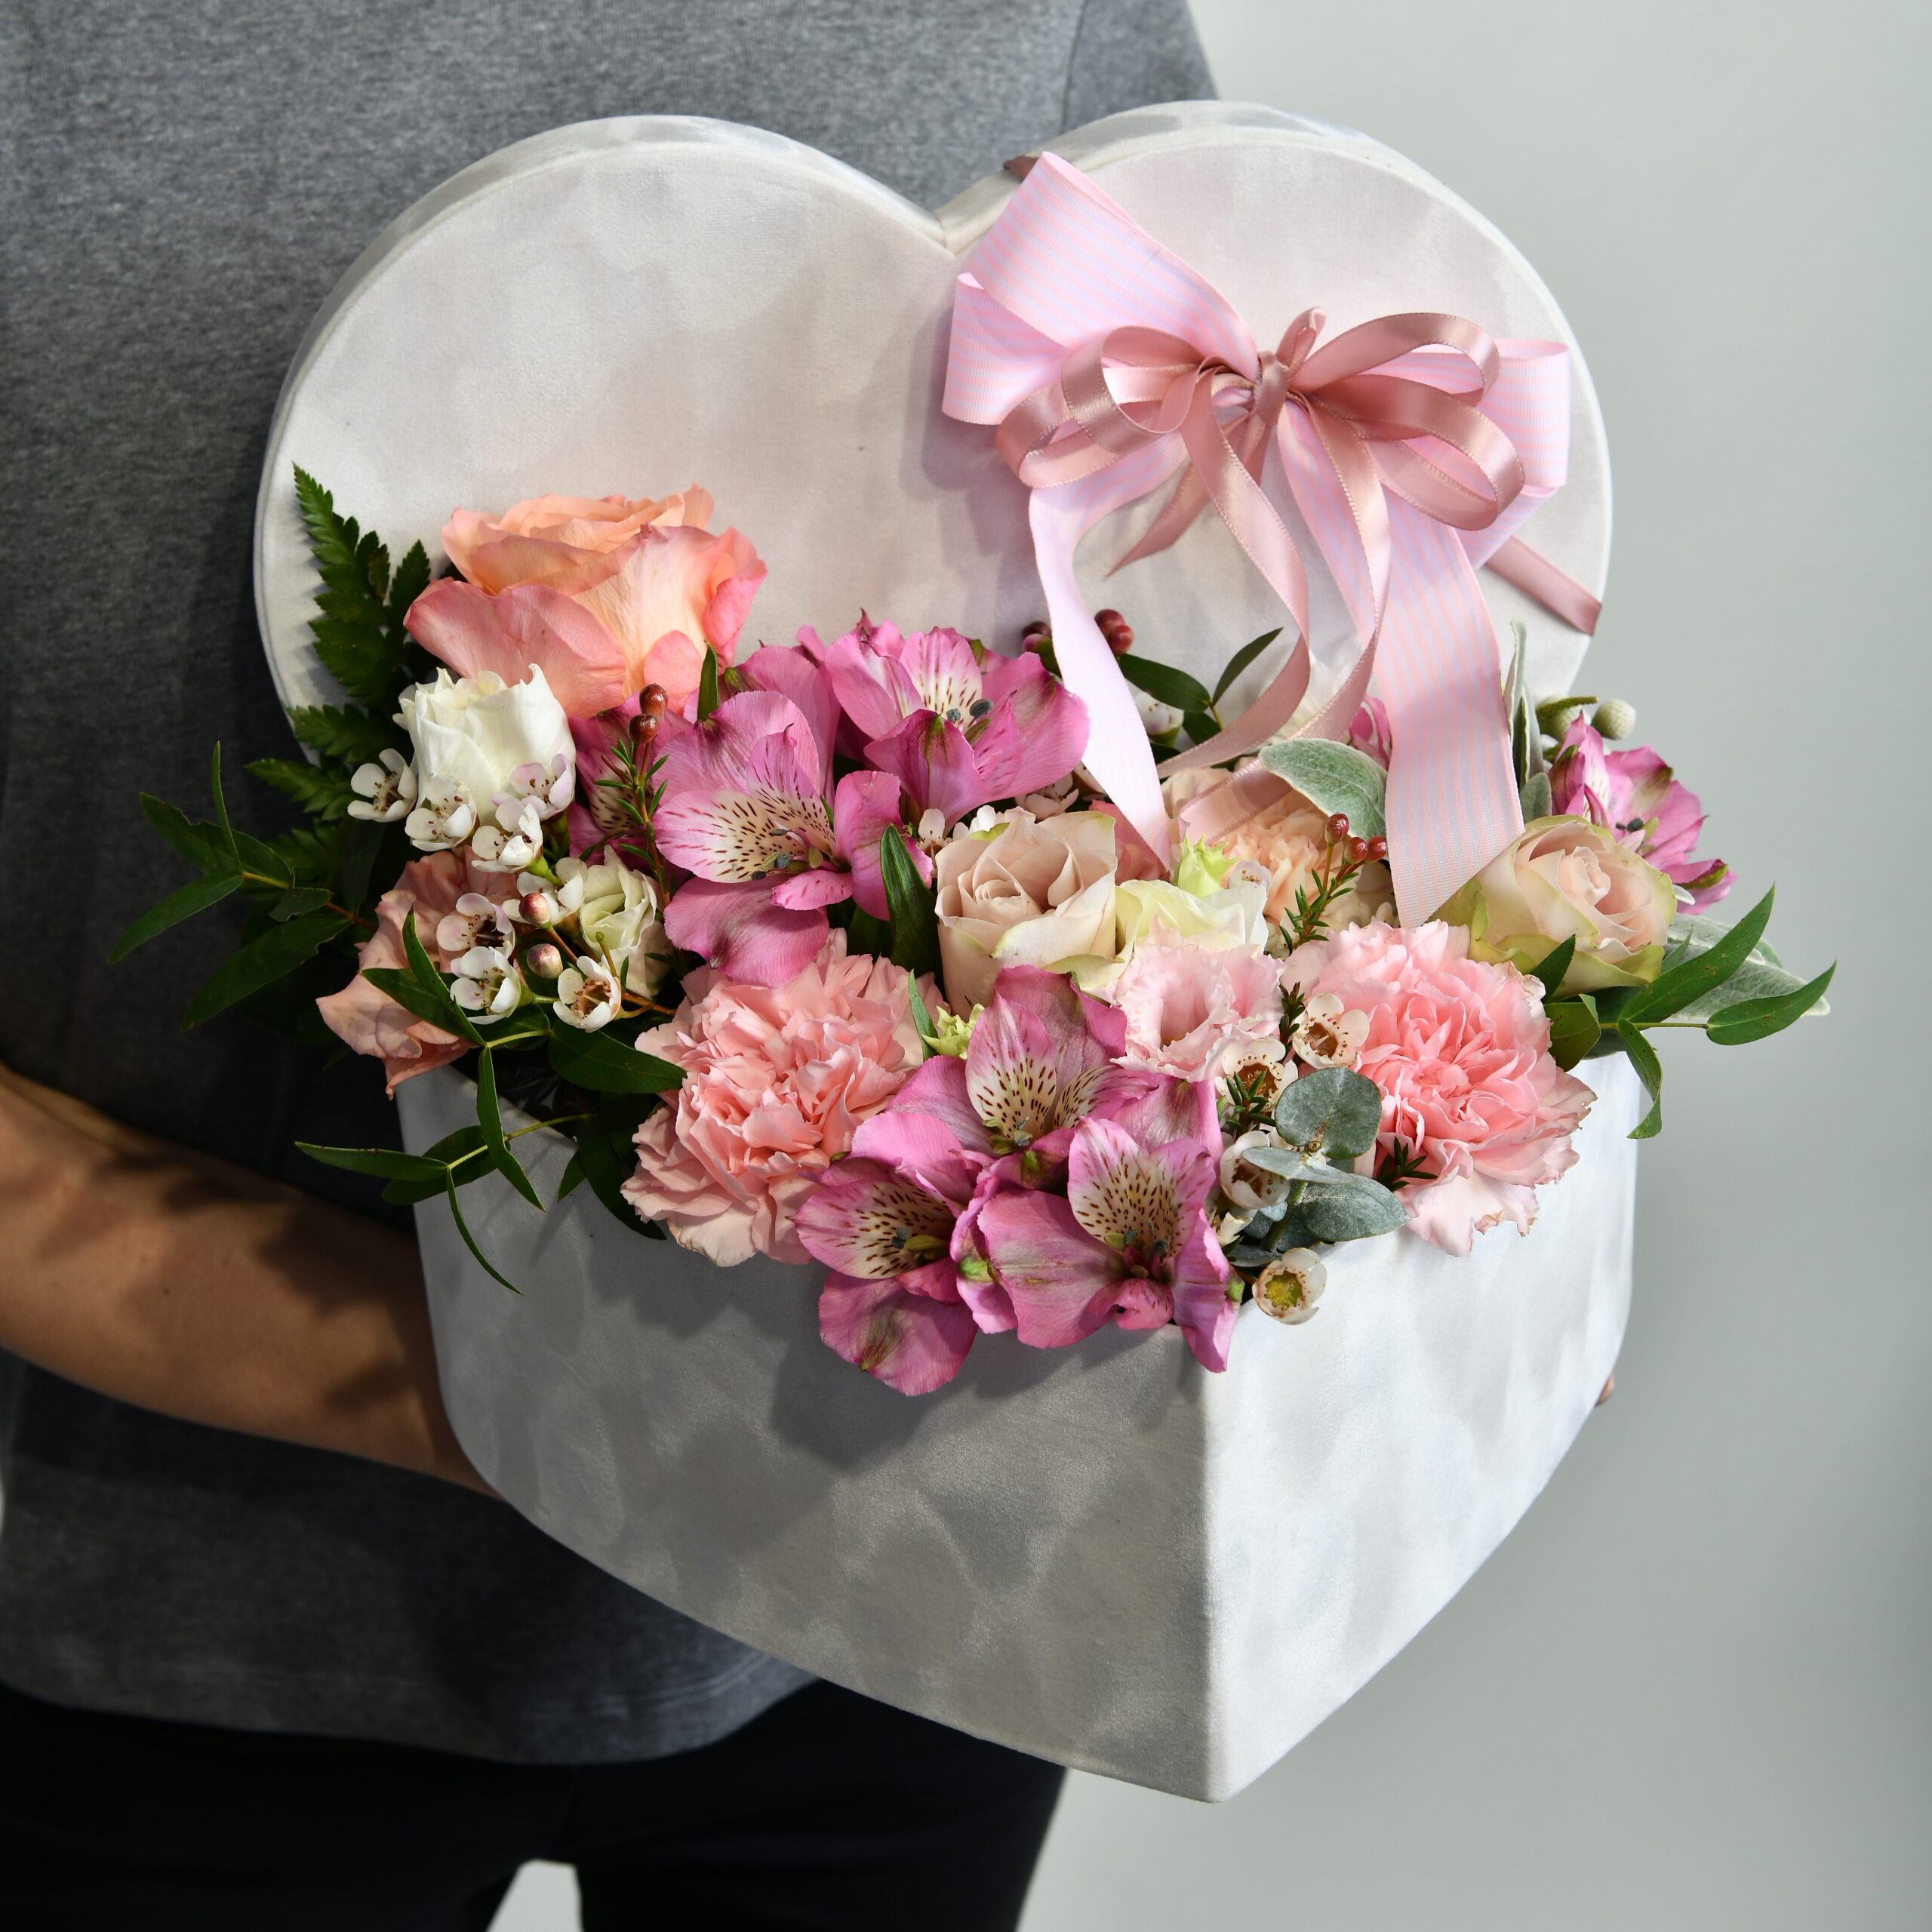 цветы в коробке - доставка цветов Белград - интернет магазин цветов Белград